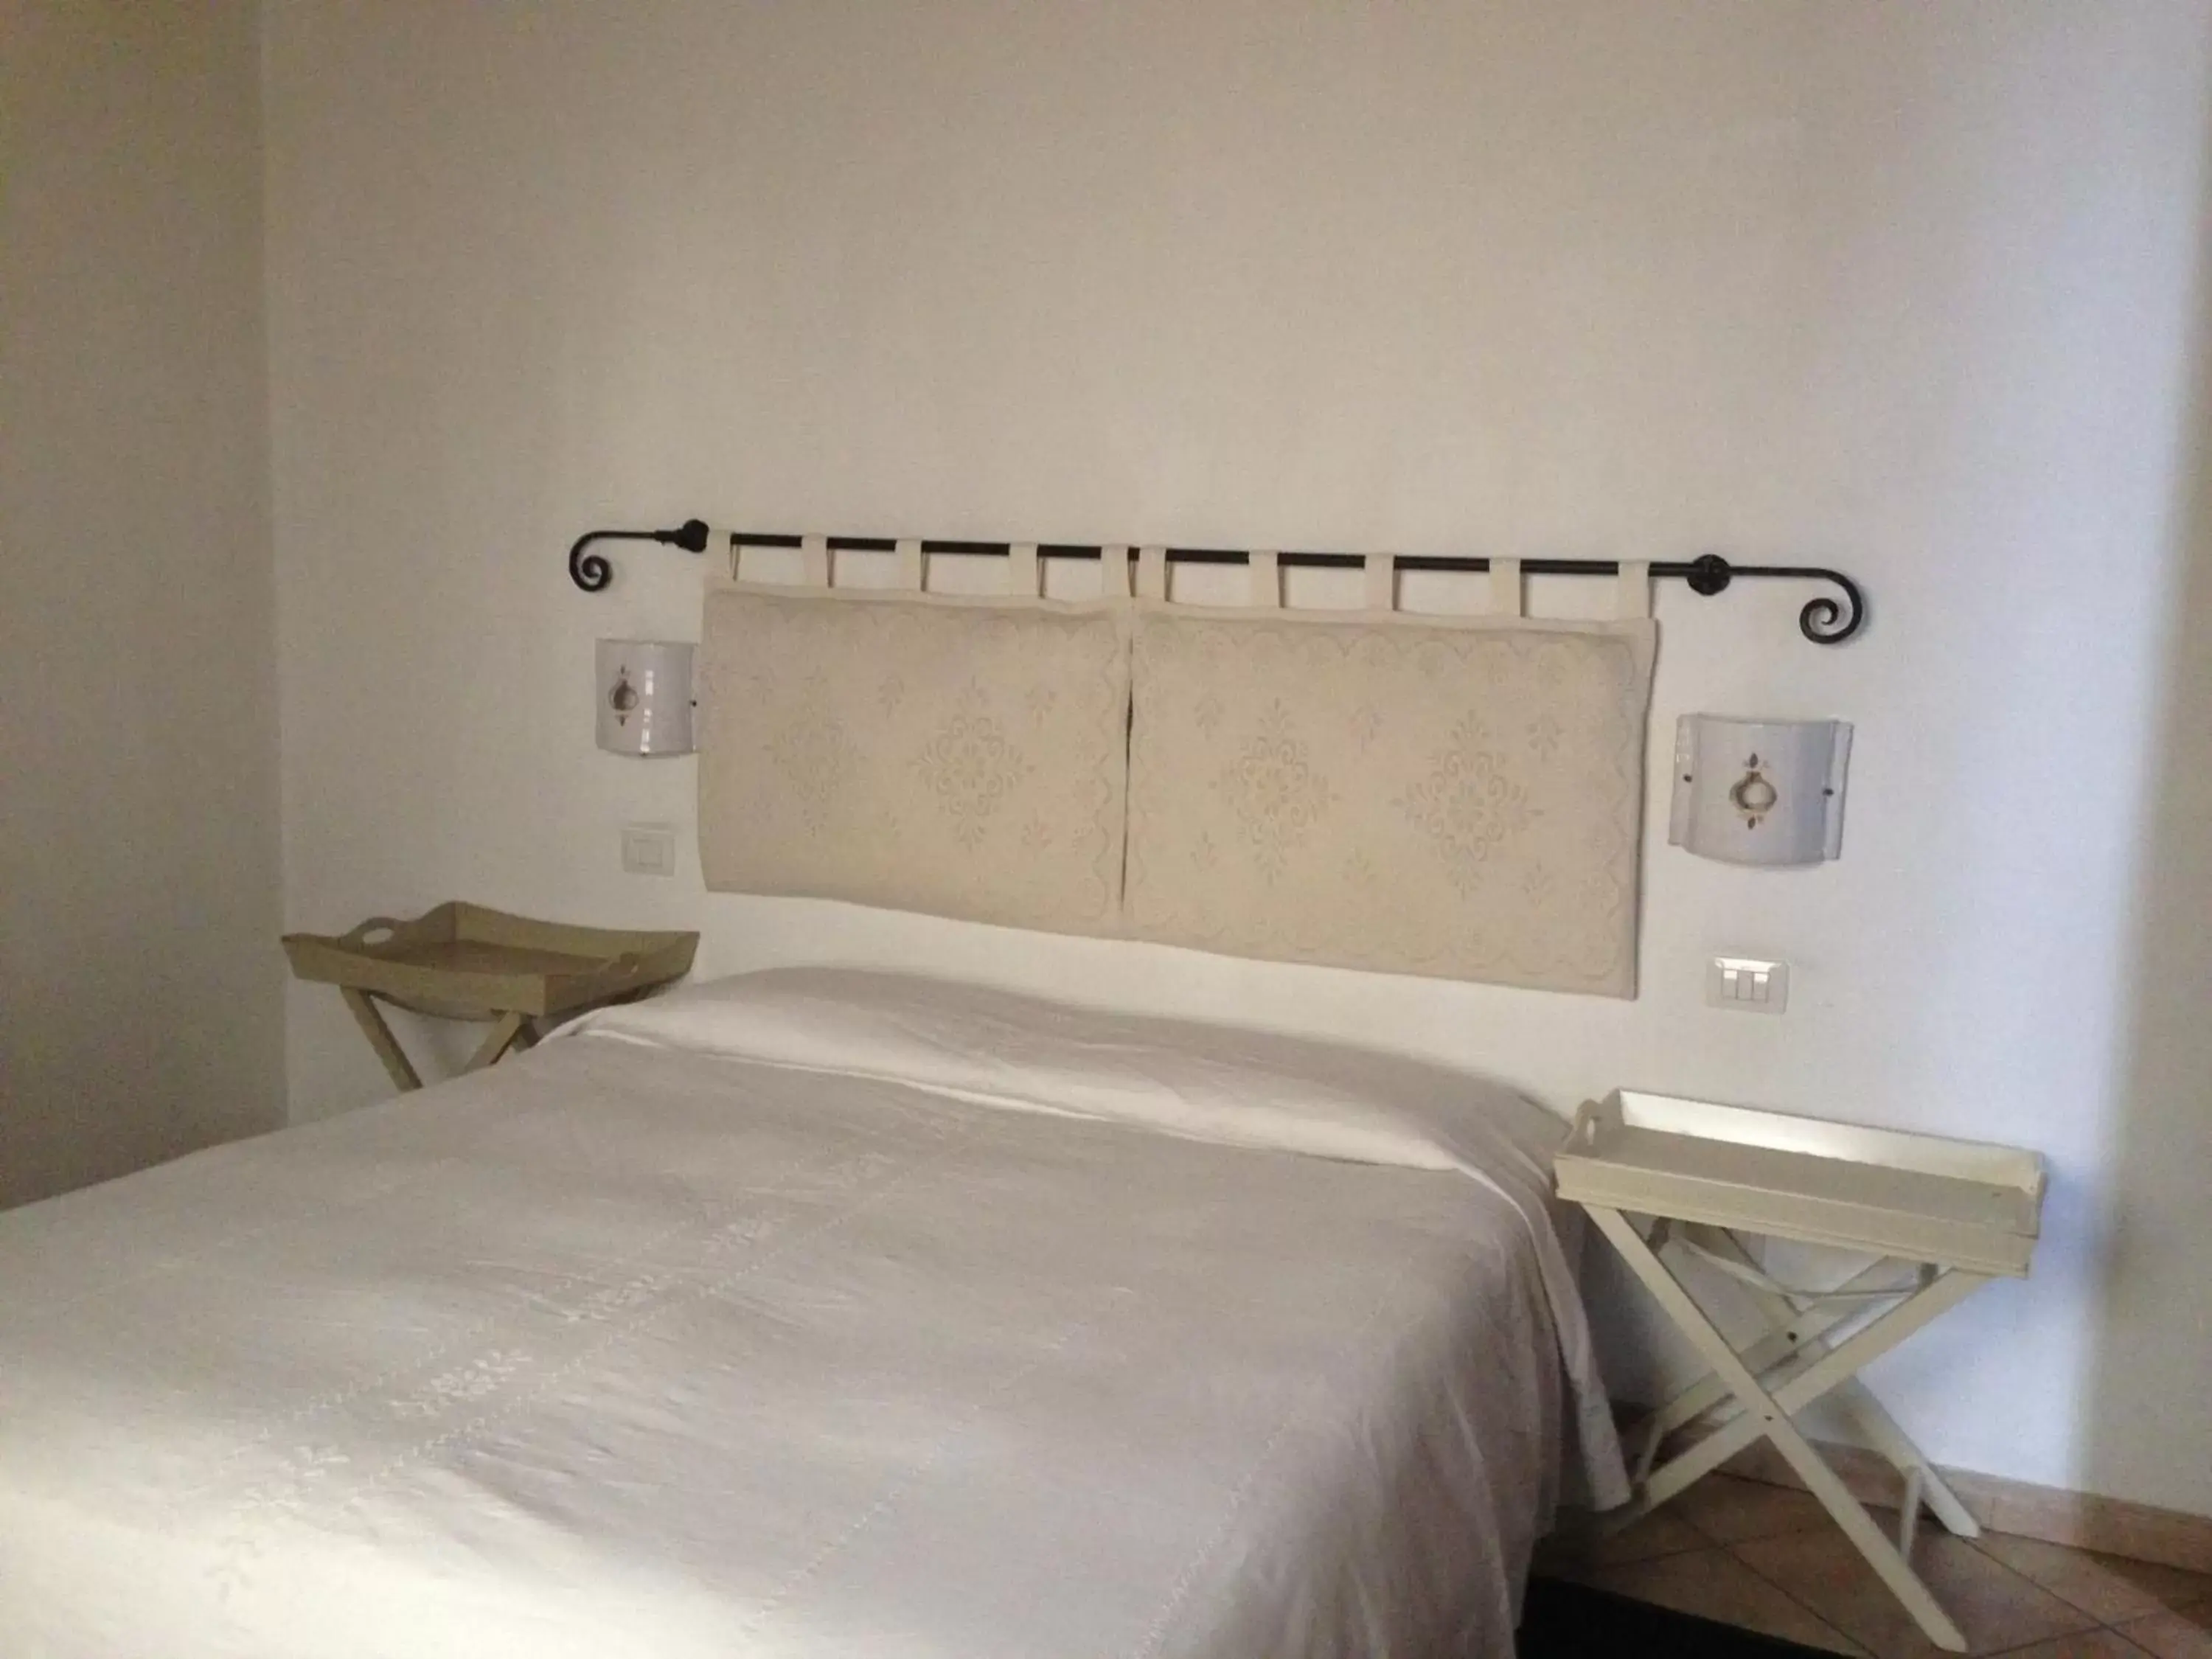 Bed, Room Photo in Guest House Il Giardino Segreto